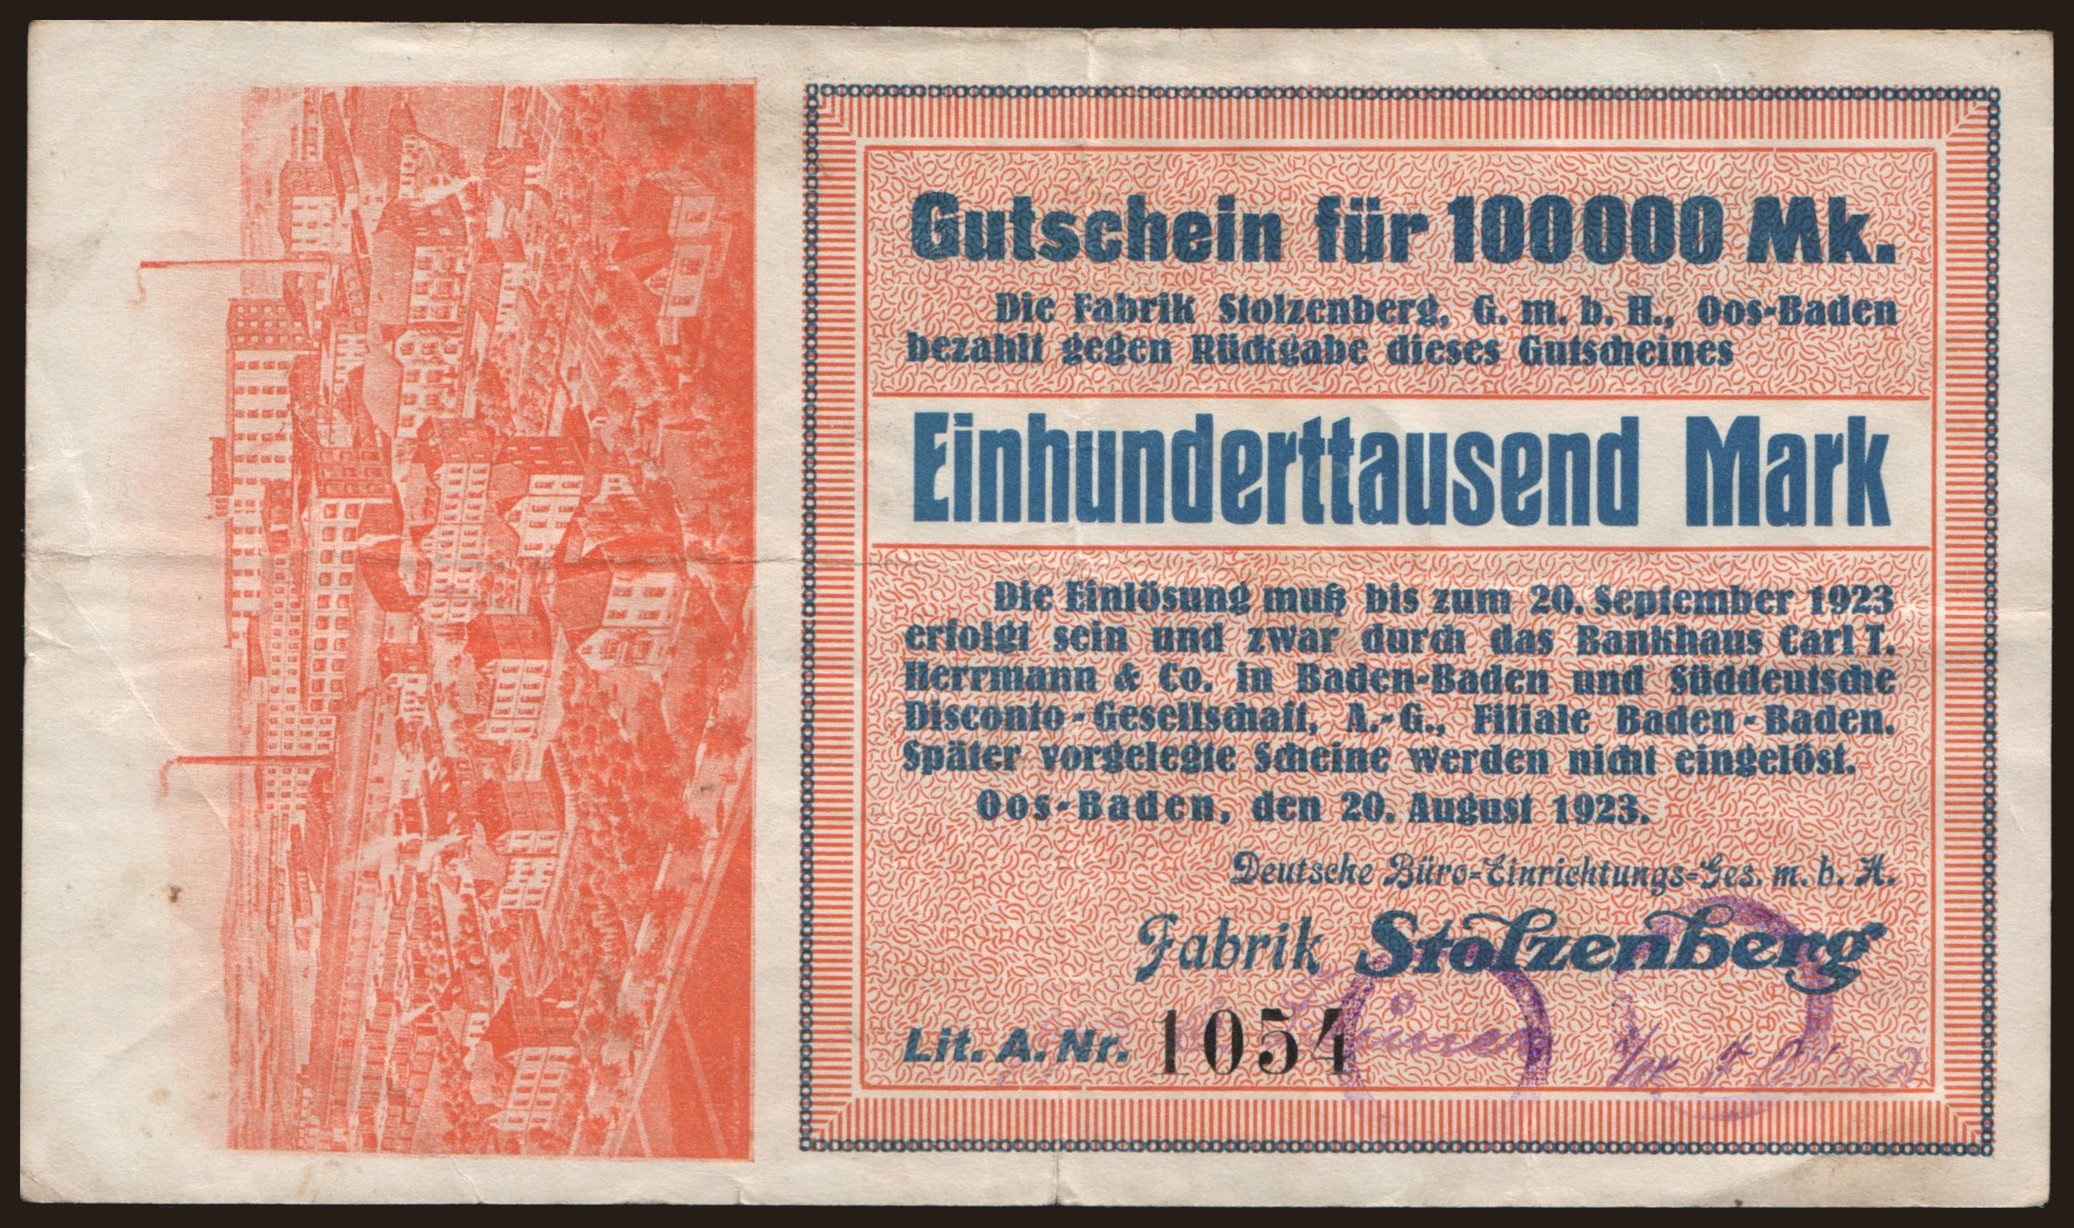 Oos-Baden/ Deutsche Büro-Einrichtungsges. m.b.H., Fabrik Stolzenberg,  100.000 Mark, 1923 | notafilia-kp.com